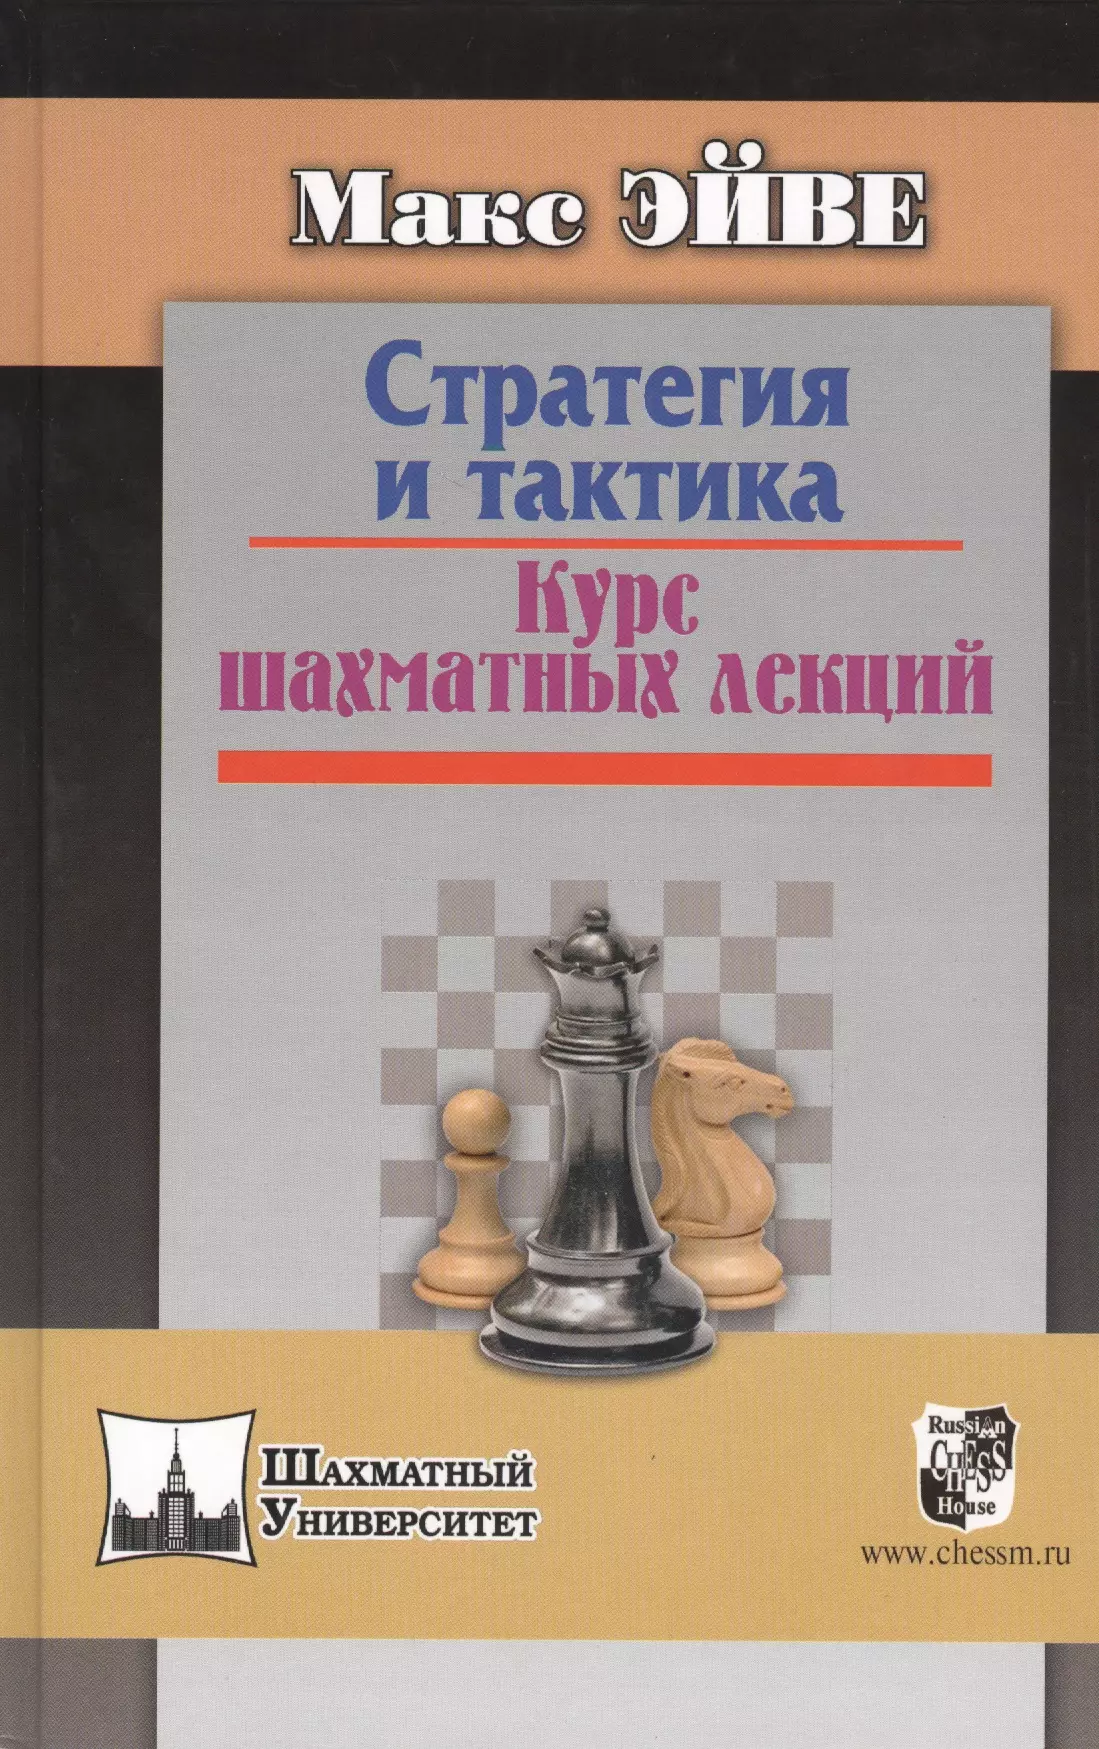 Эйве Макс Стратегия и тактика Курс шахматных лекций (ШУ) Эйве